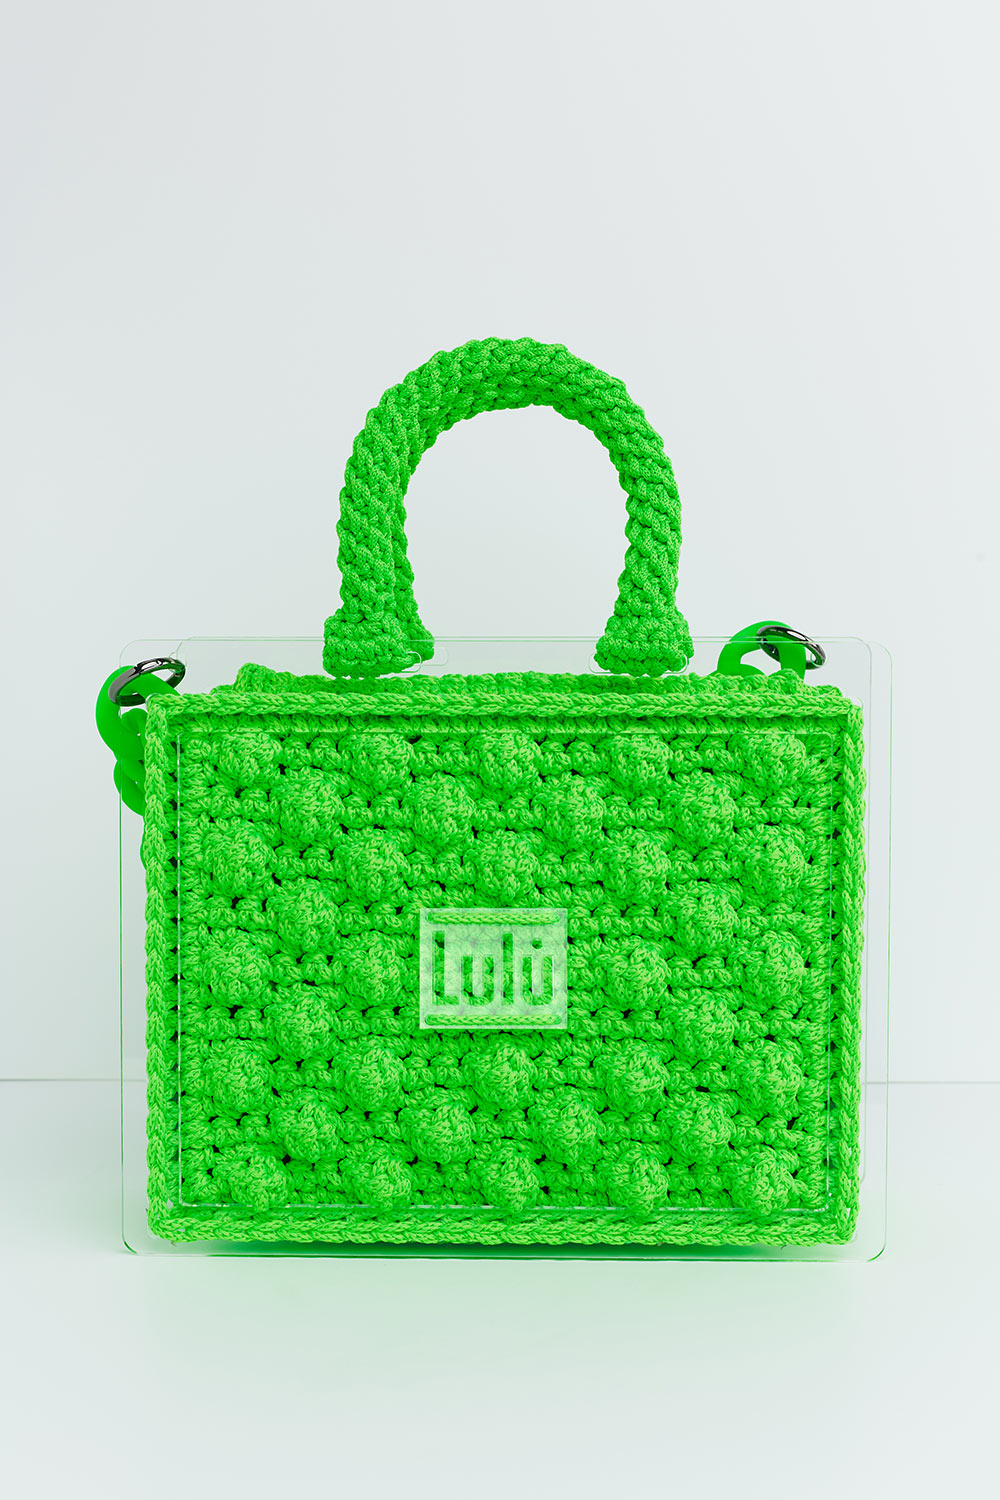 500 P/L Plexiglass Bag in green